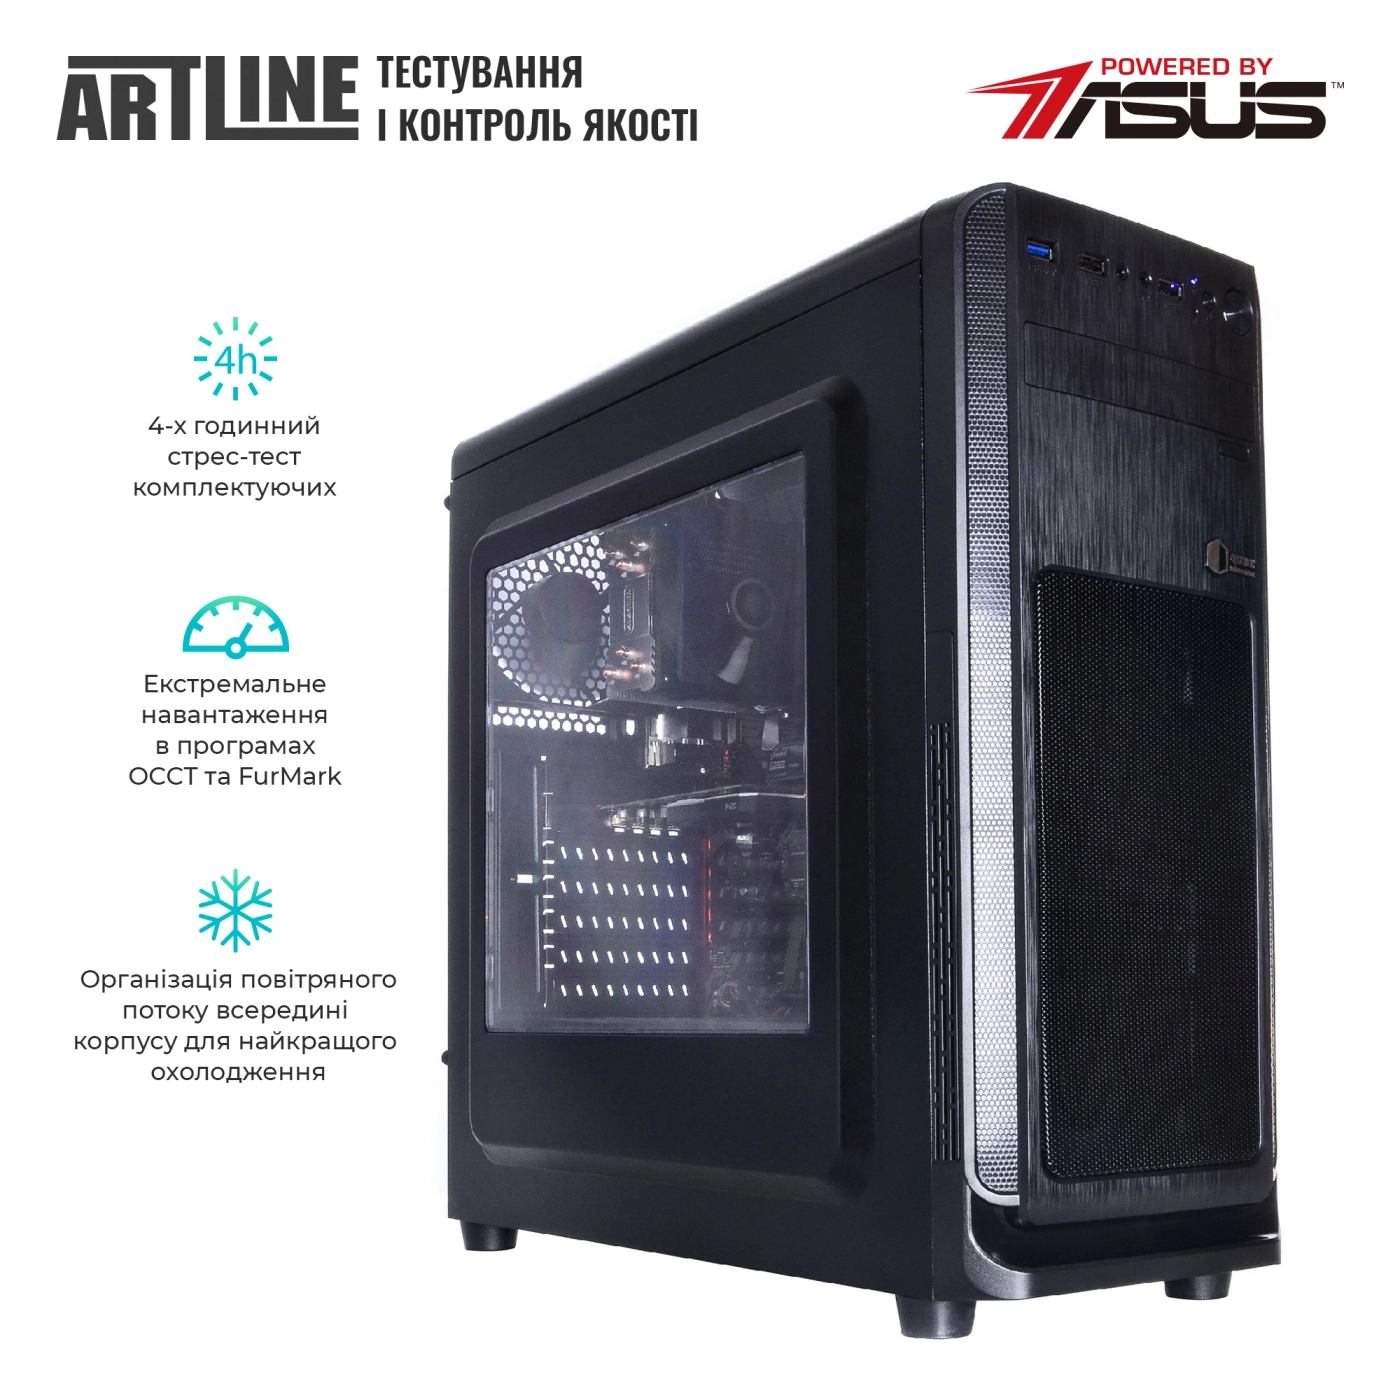 Купить Сервер ARTLINE Business T25v17 - фото 6